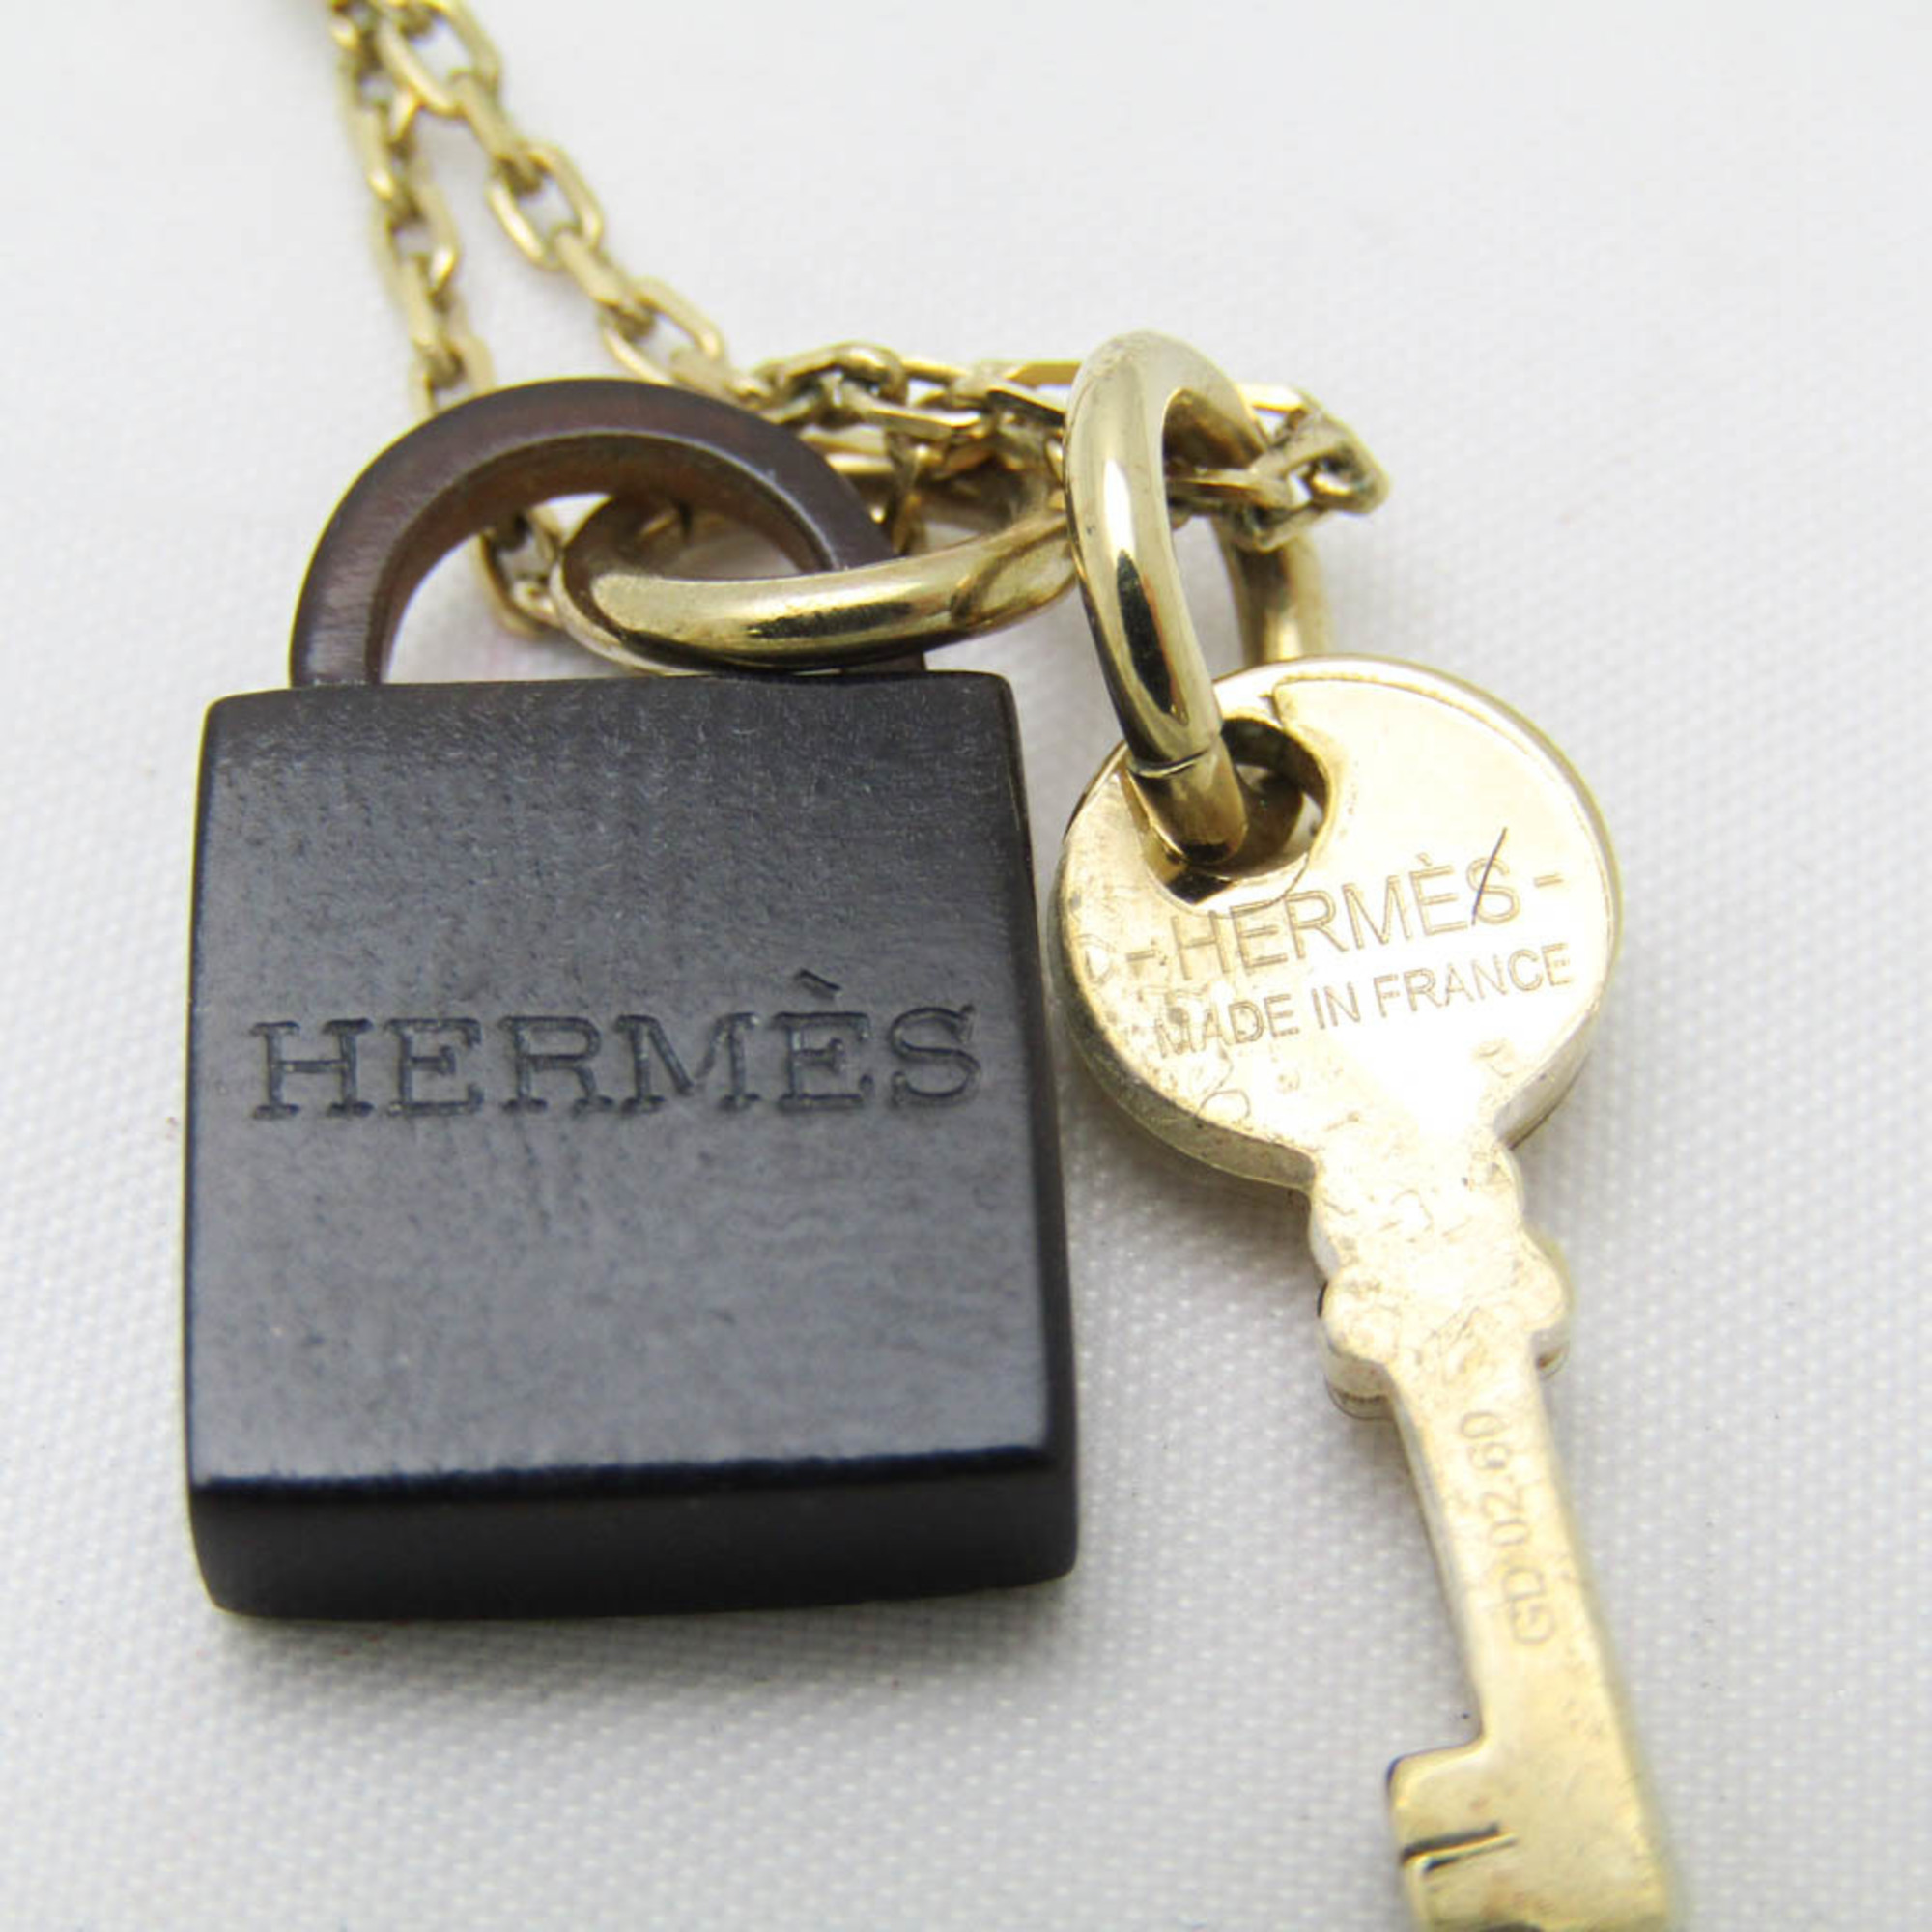 エルメス(Hermes) バッファローホーン,メタル レディース ペンダントネックレス (ダークブラウン,ゴールド) カデナ&鍵型 アミュレット パドロック